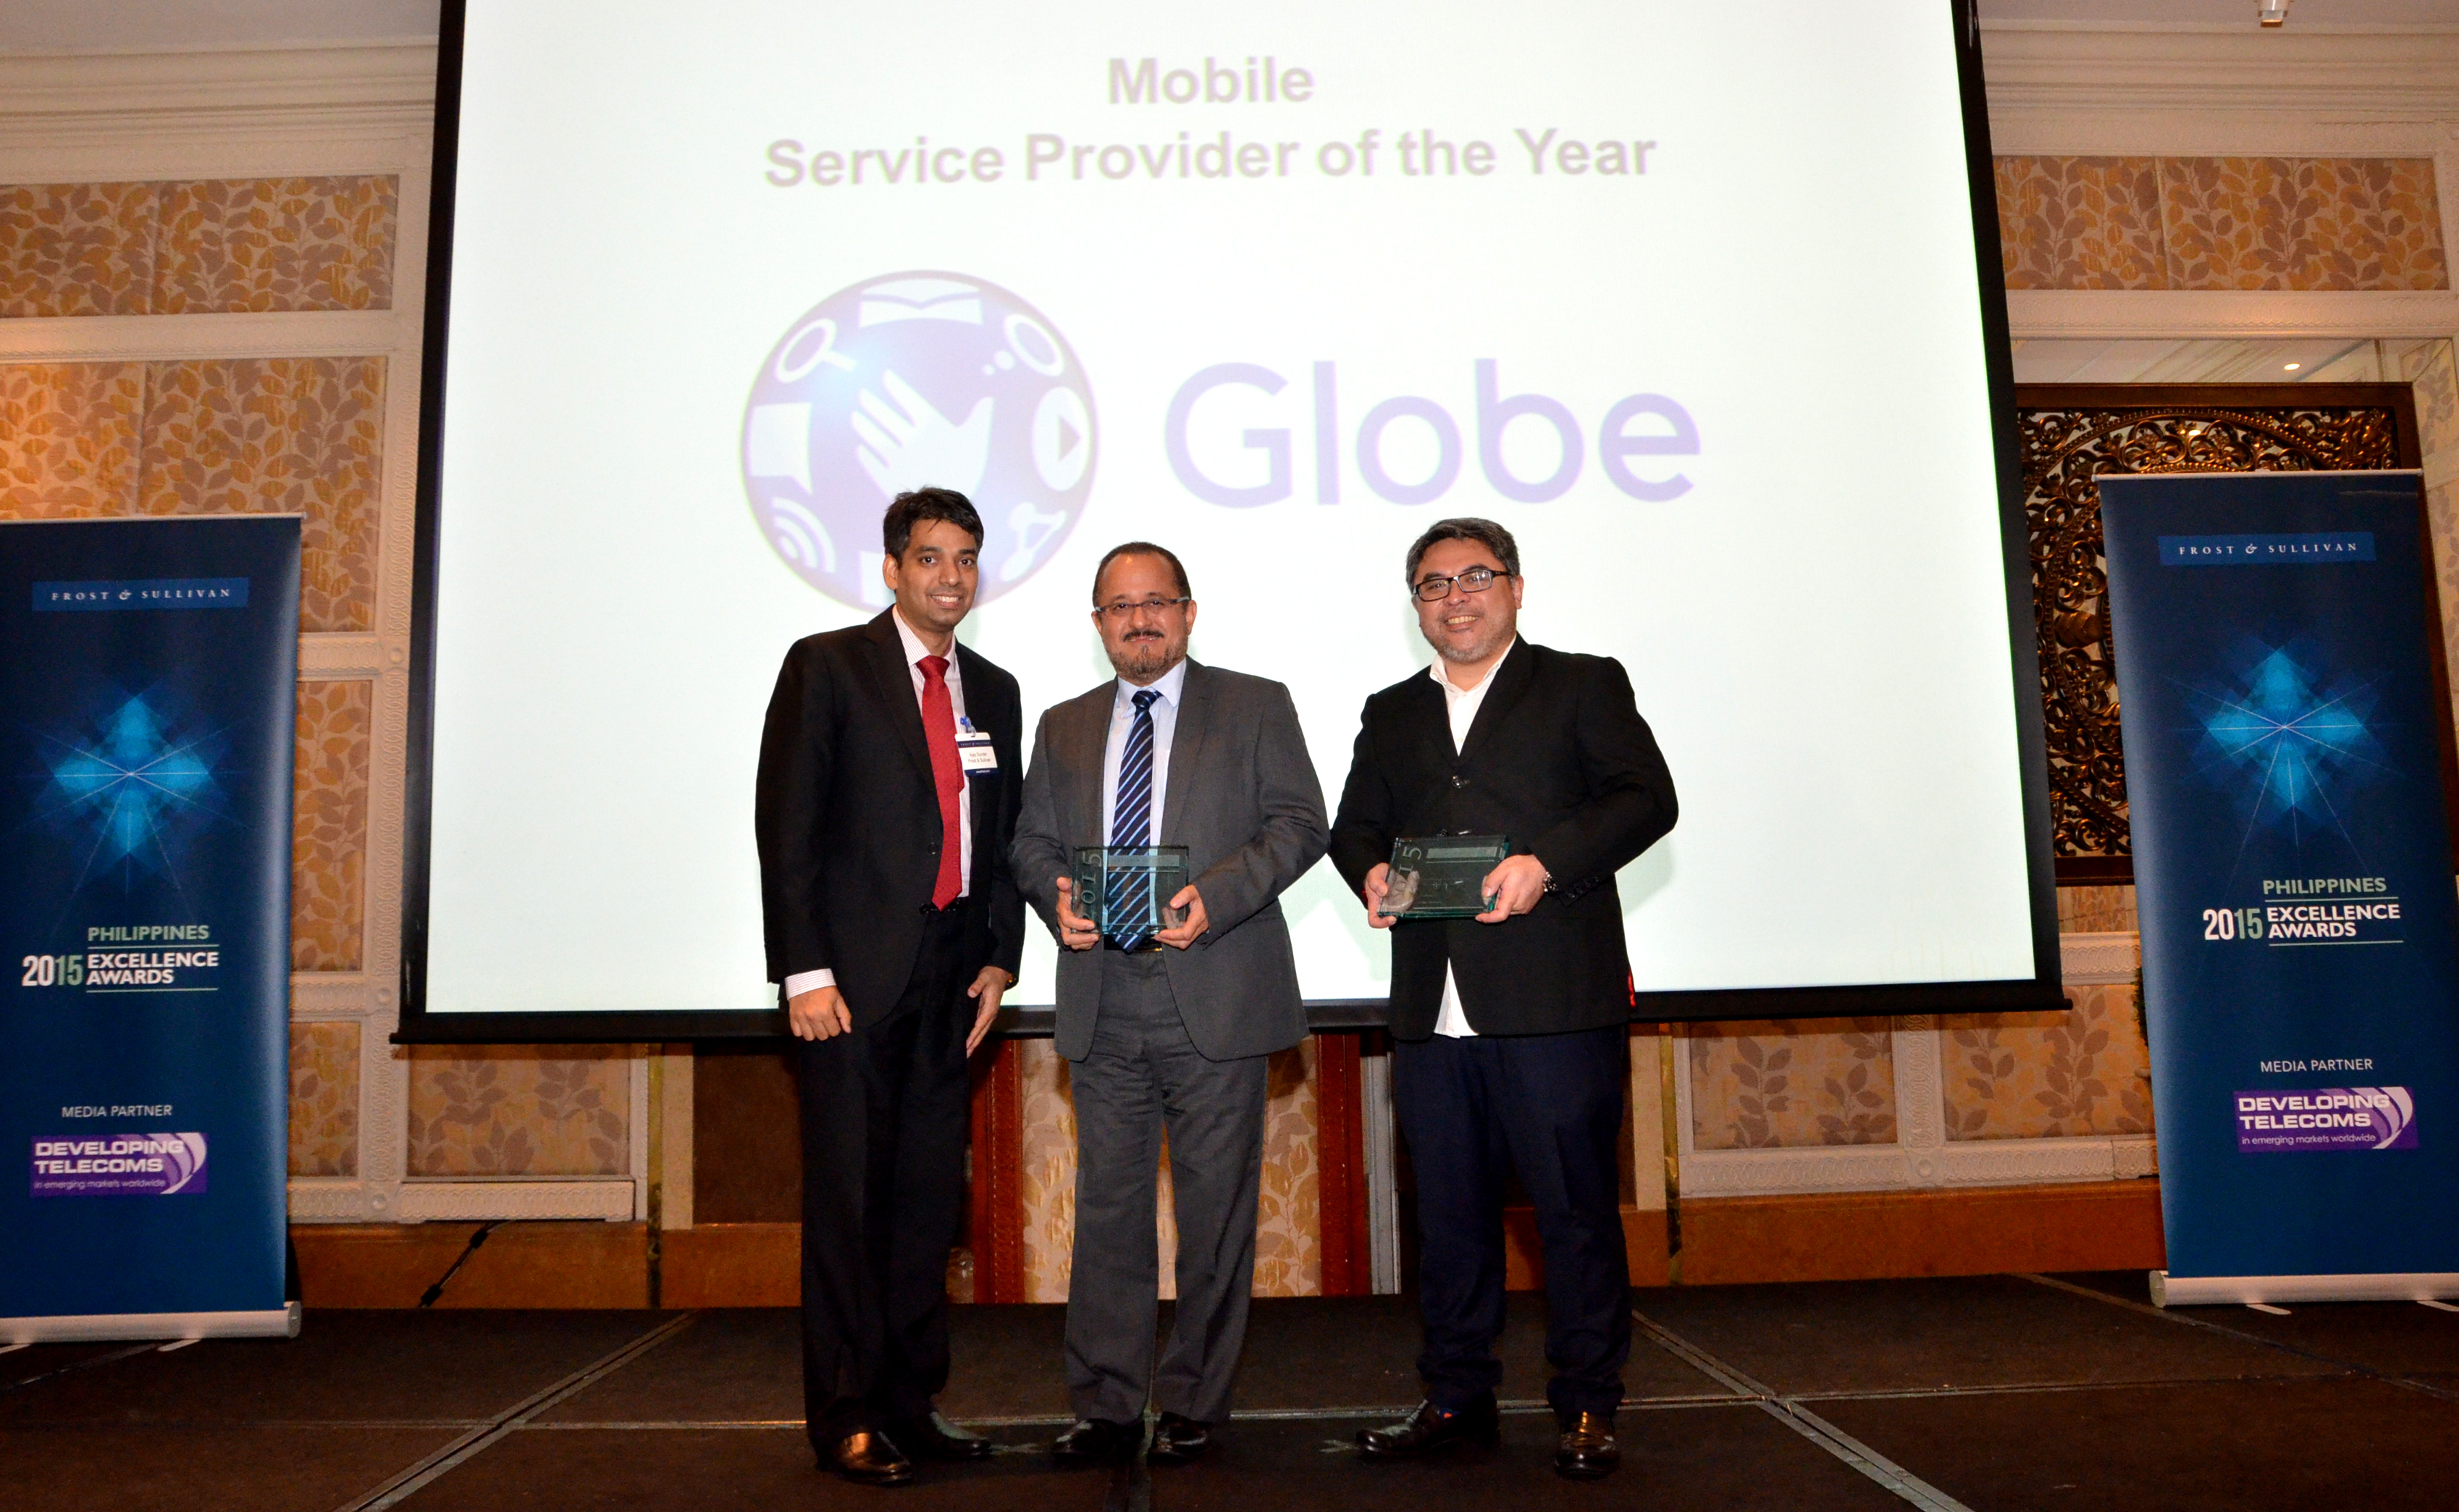 Globe Telecom declared 2015 Mobile Service Provider